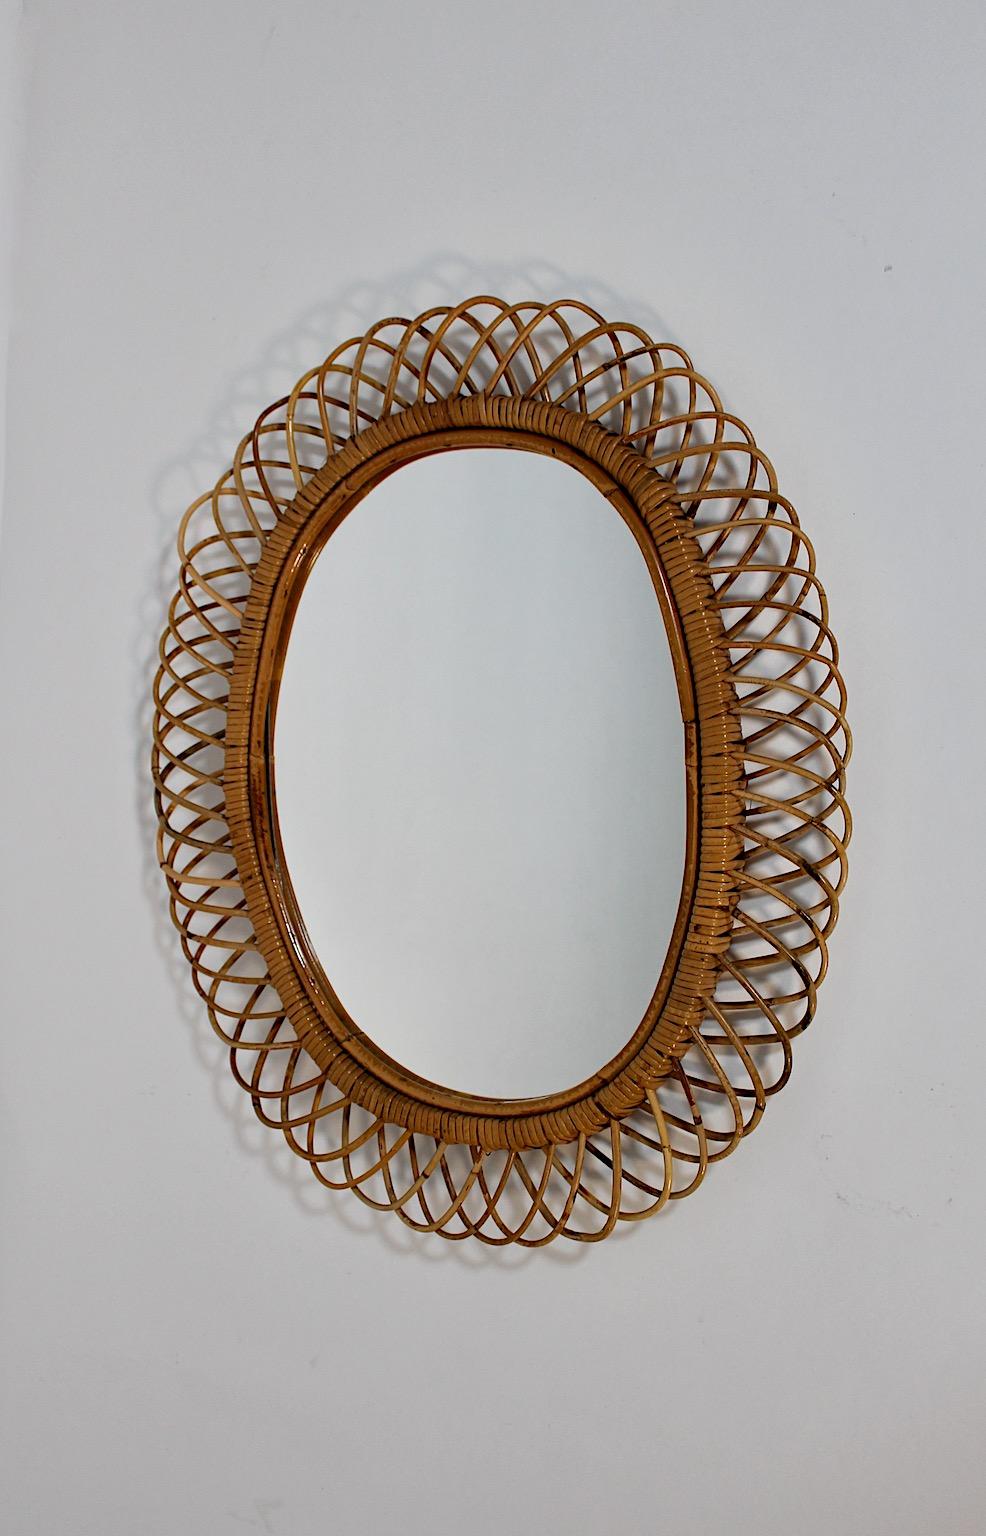 Italian Riviera Style Vintage Rattan Oval Wall Mirror Sunburst Mirror, 1960s, Italy For Sale